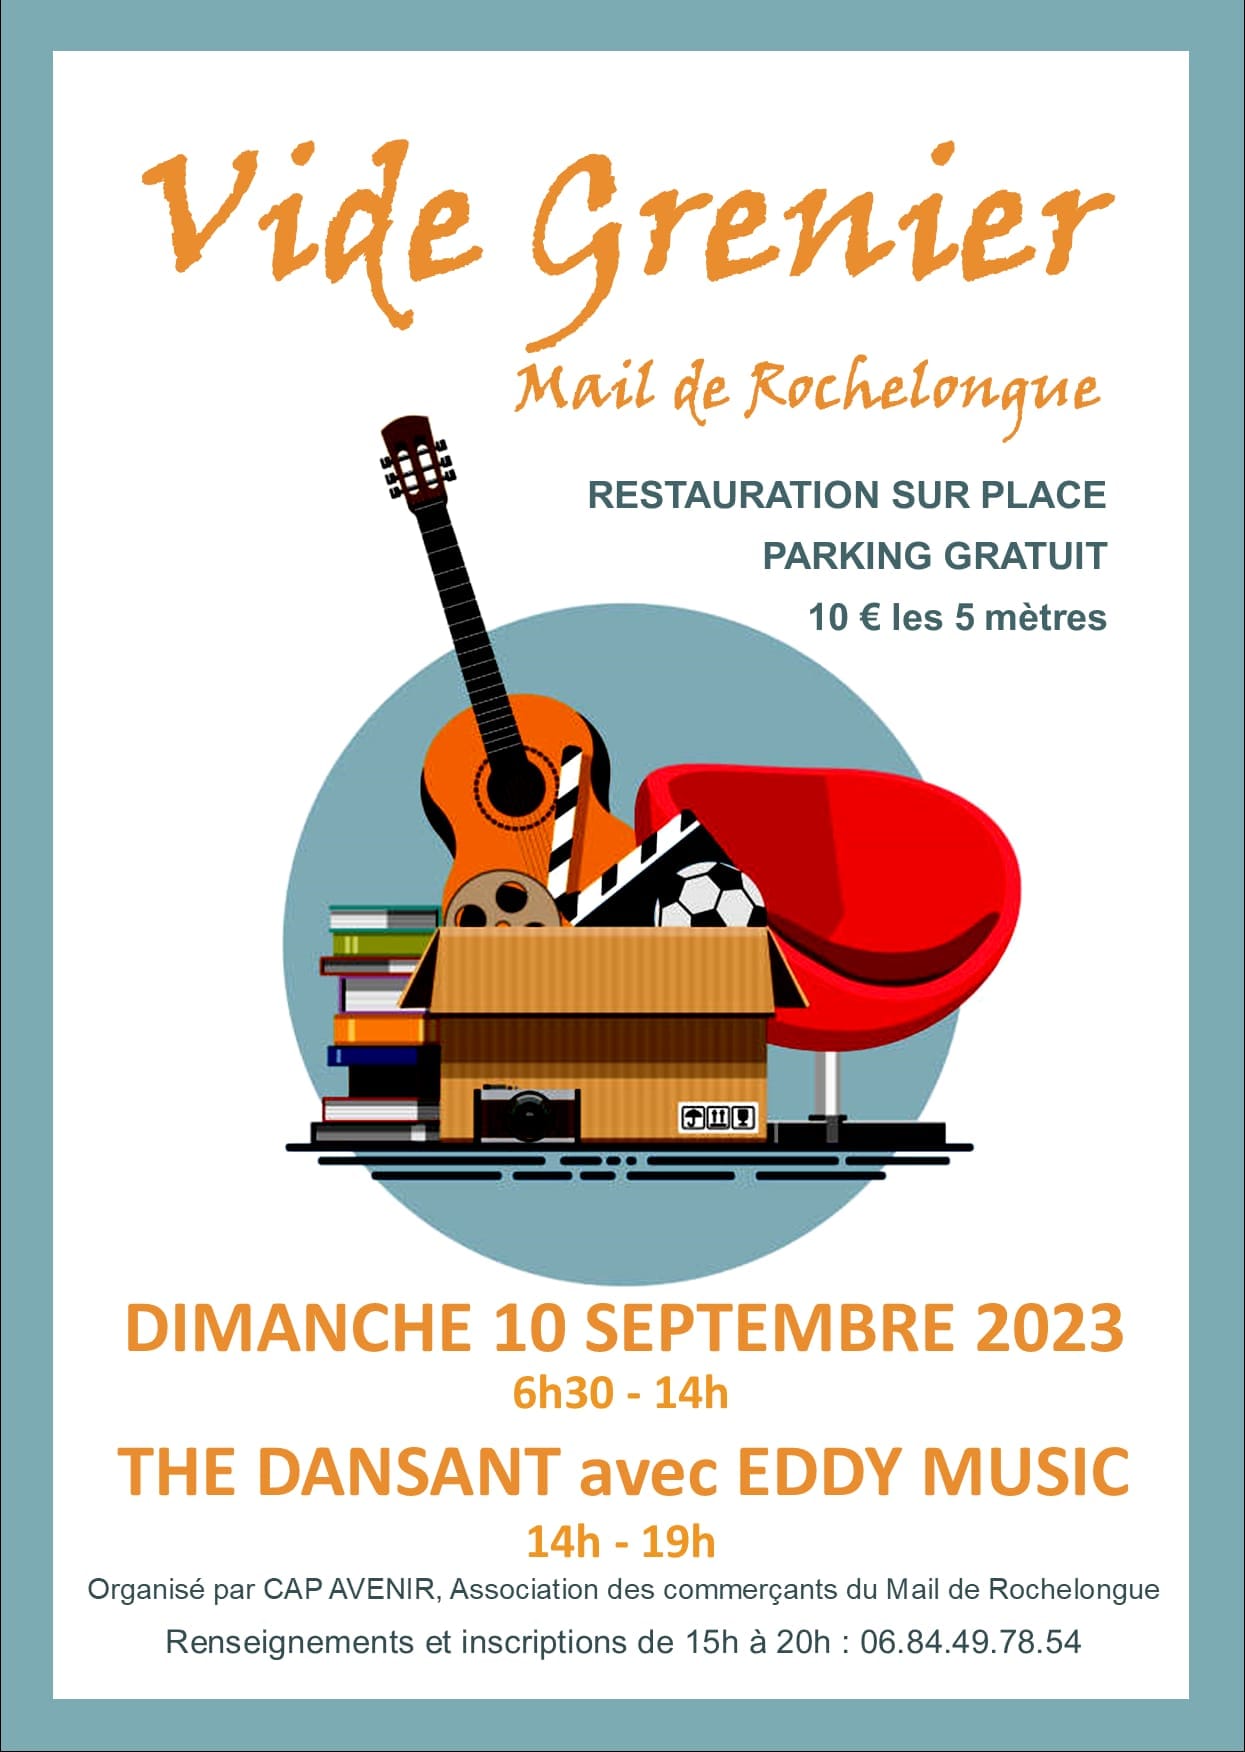 Cap d'Agde - Après le vide boutique, un vide grenier à Rochelongue le 10 septembre !